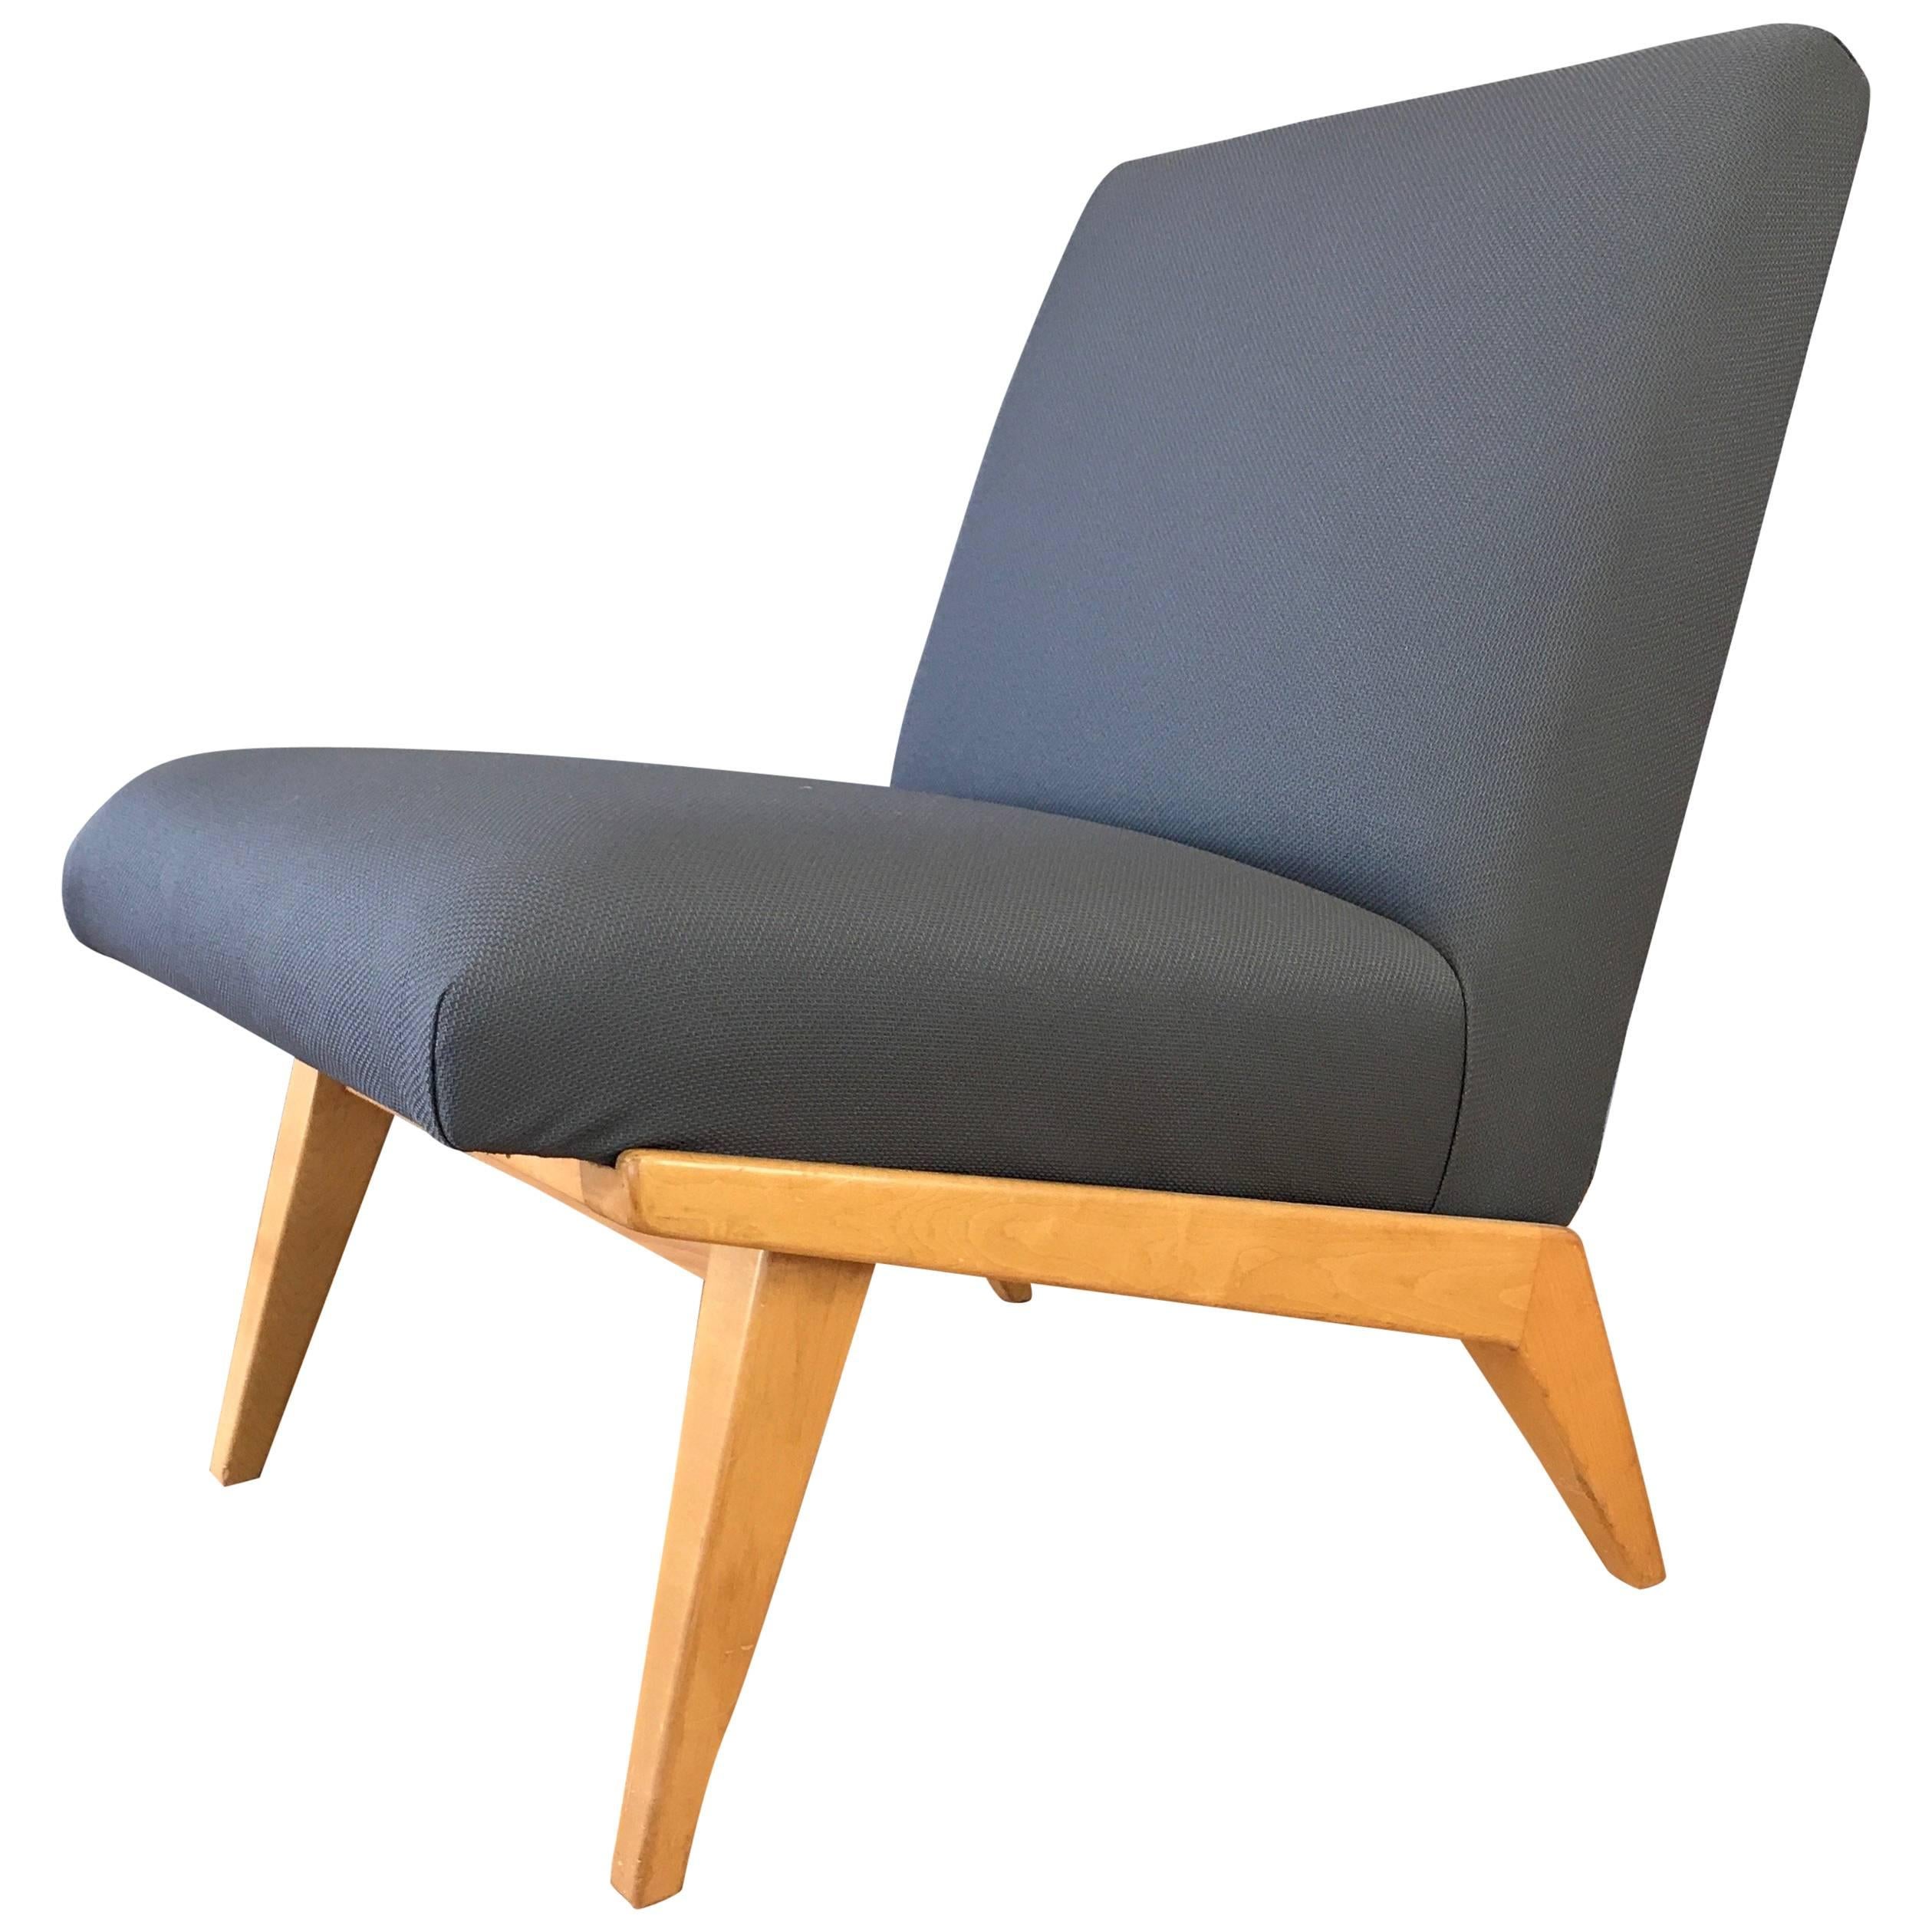 Jens Risom for Knoll Mid-Century Modern Slipper Chair